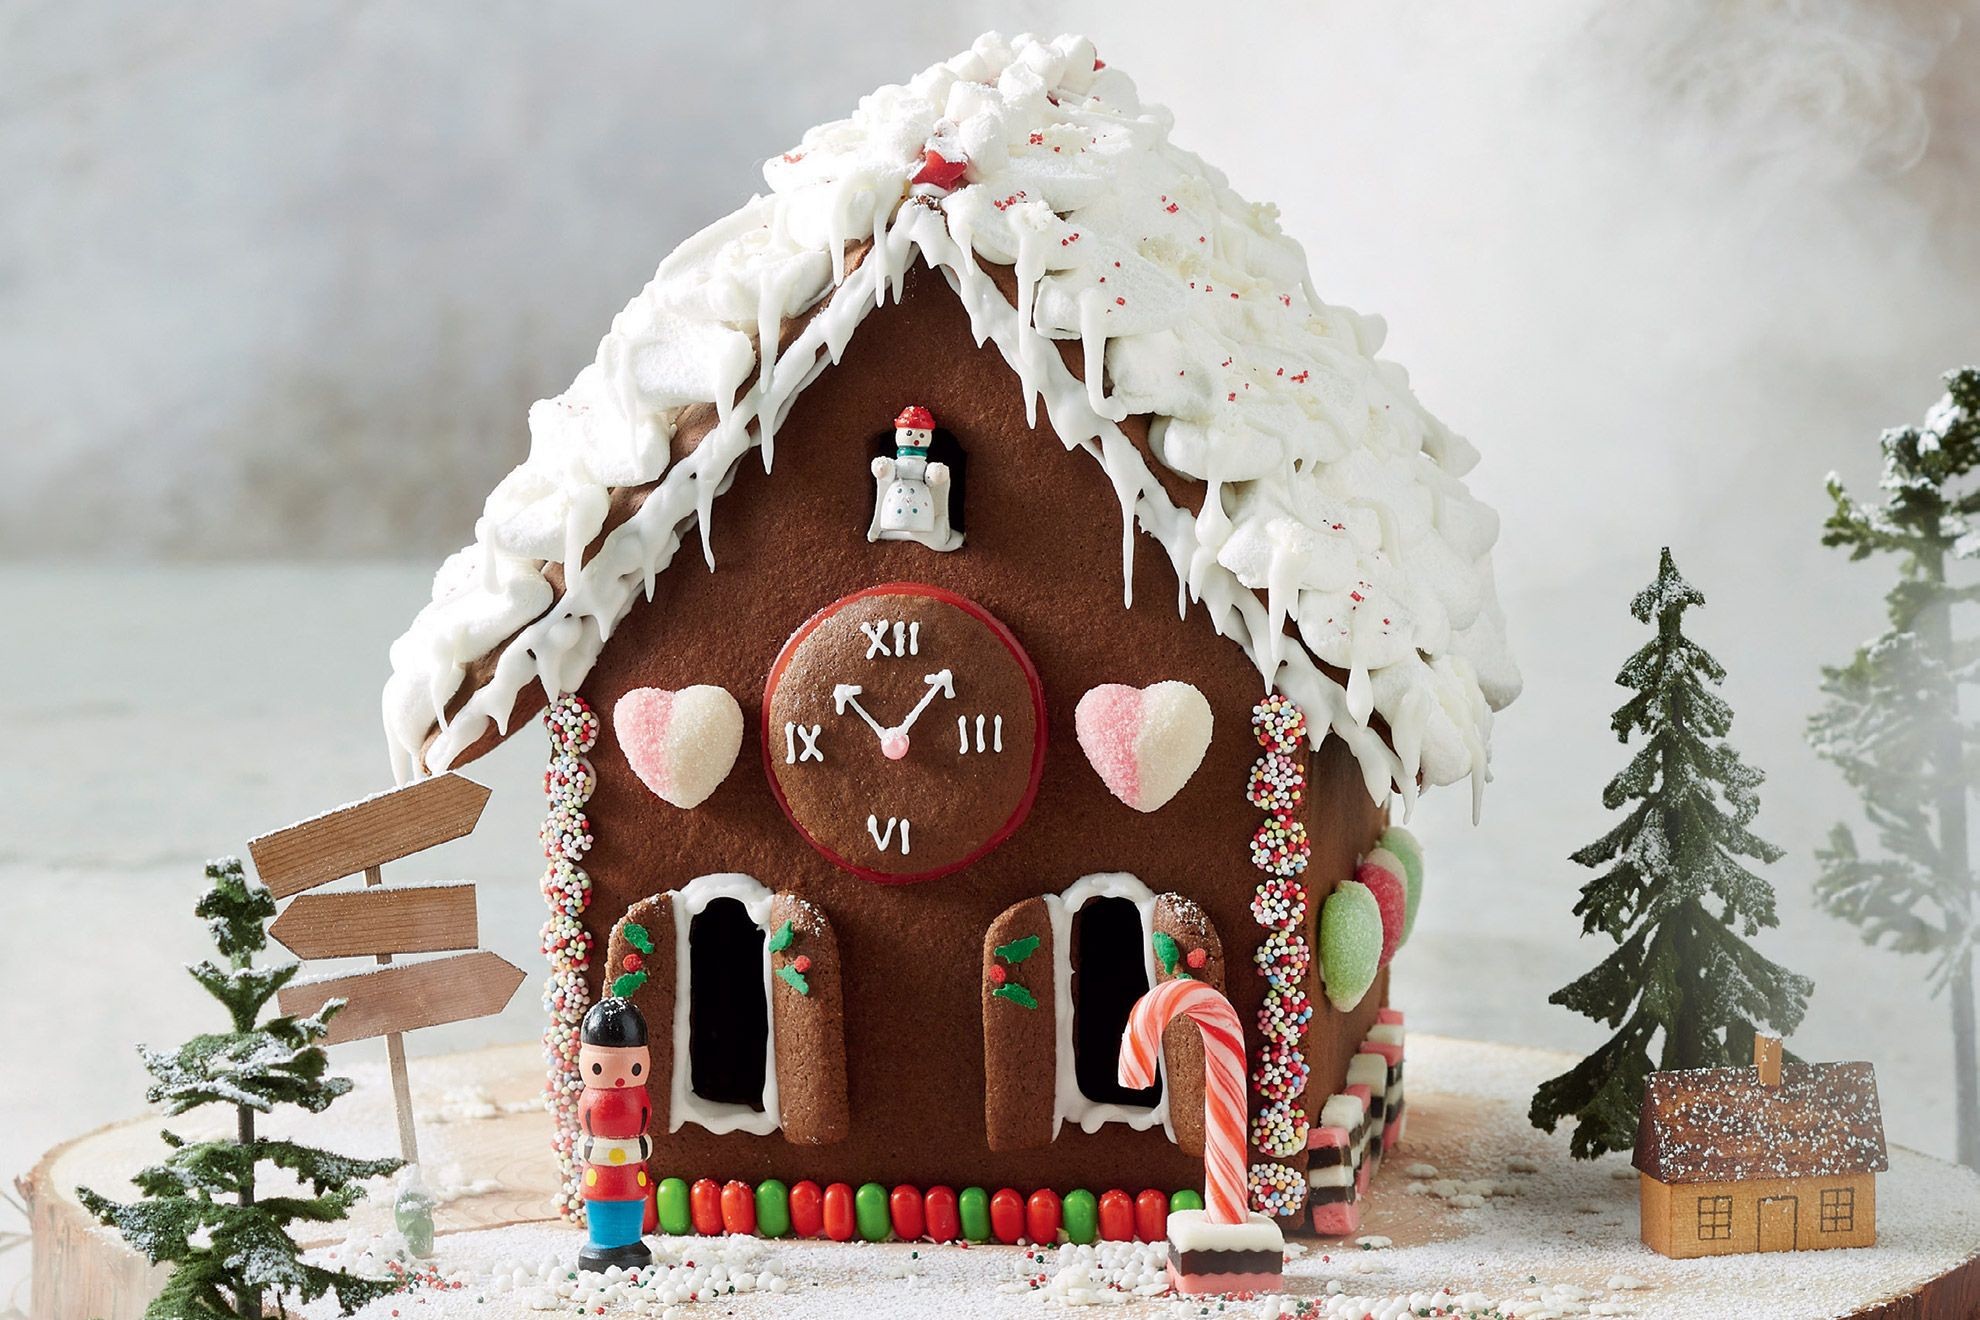 Casette di Natale: cioccolato, pan di zenzero, savoiardi e fantasia - Irpot